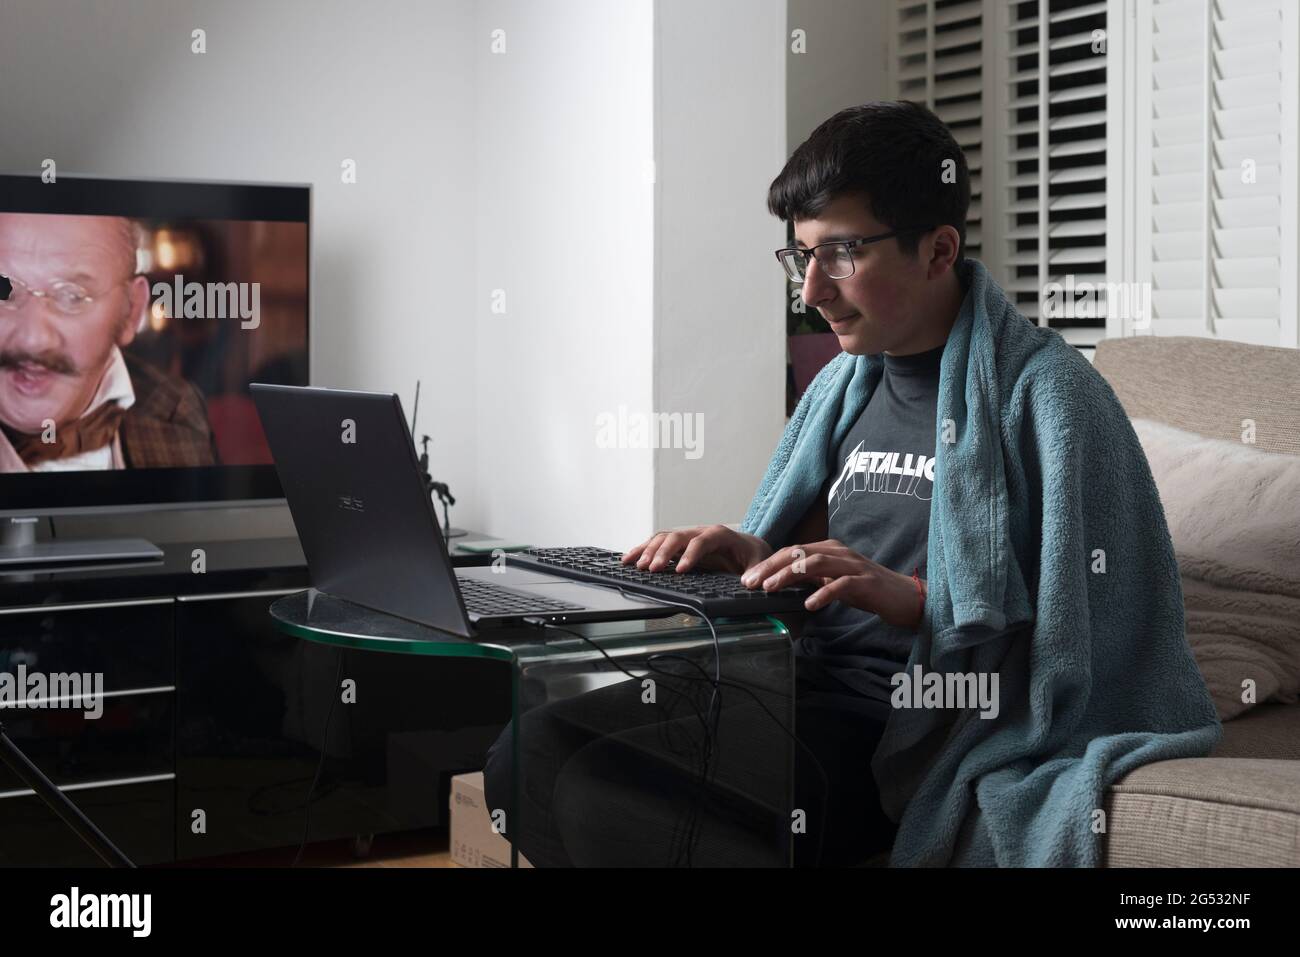 Teenager, Alter 13-14 Jahre, Studie online im Wohnzimmer, Surrey, Großbritannien Stockfoto